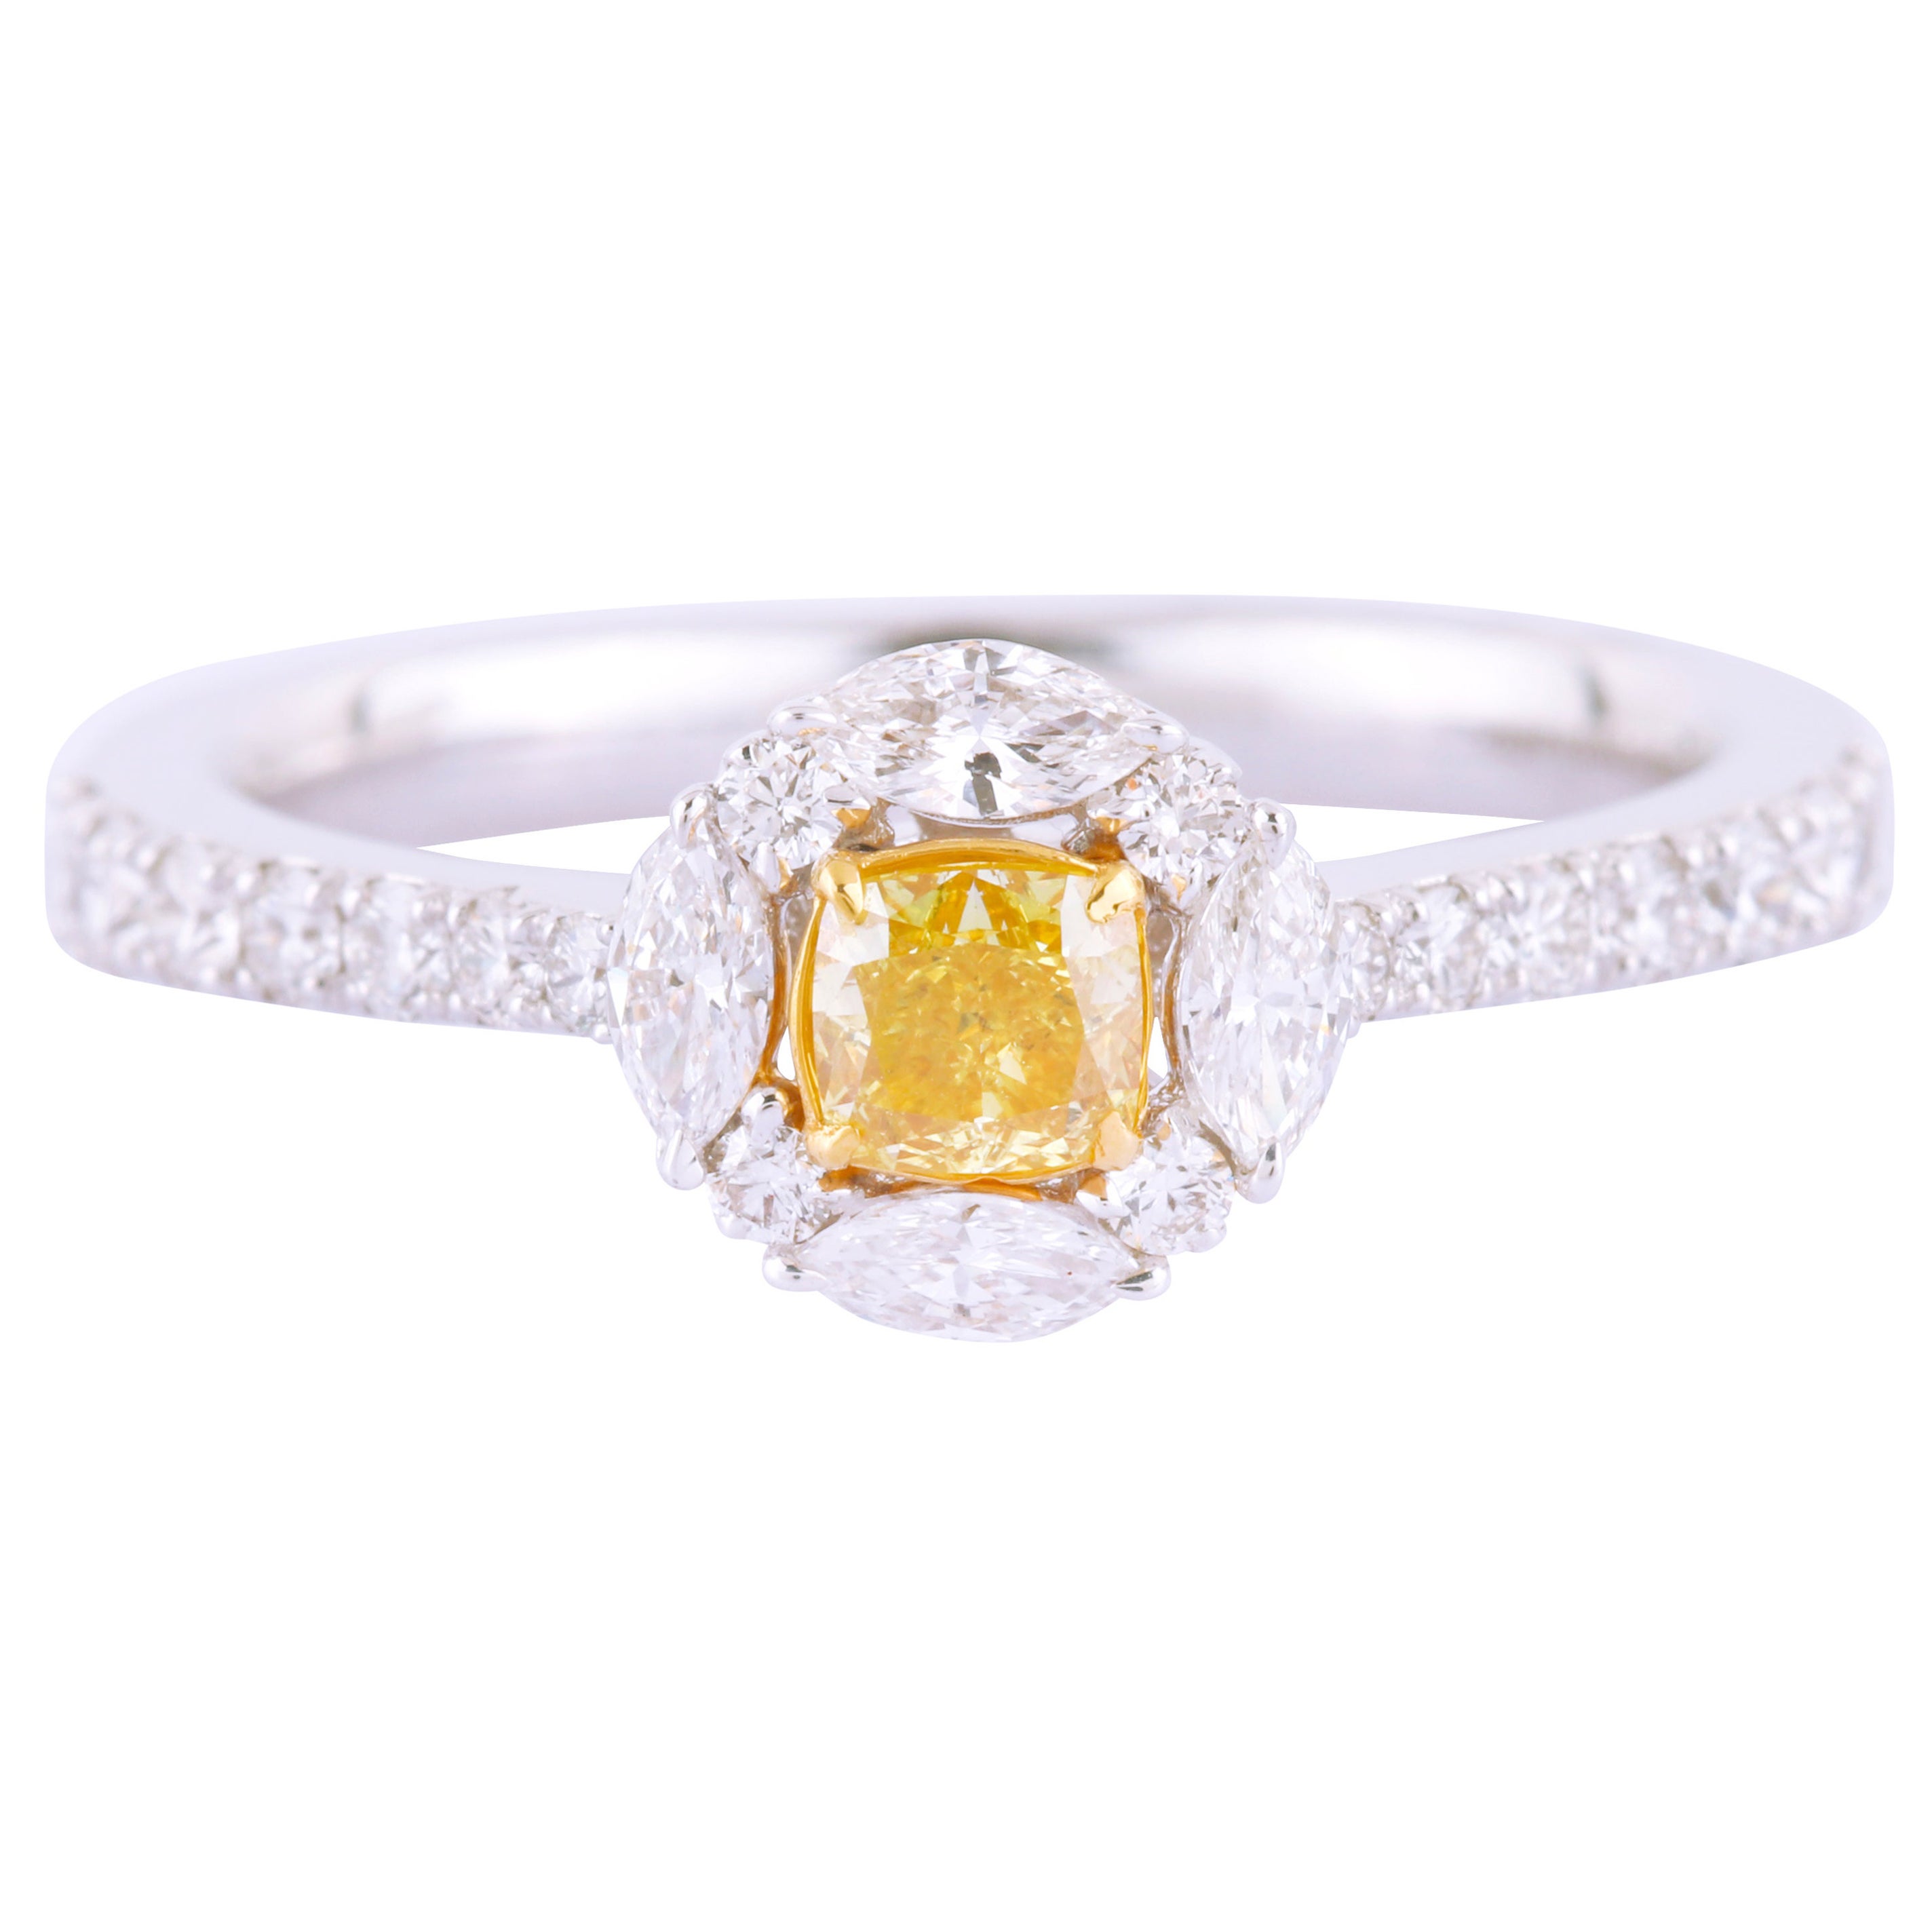 Bague solitaire en or 18 carats avec diamants jaunes et blancs de couleur fantaisie